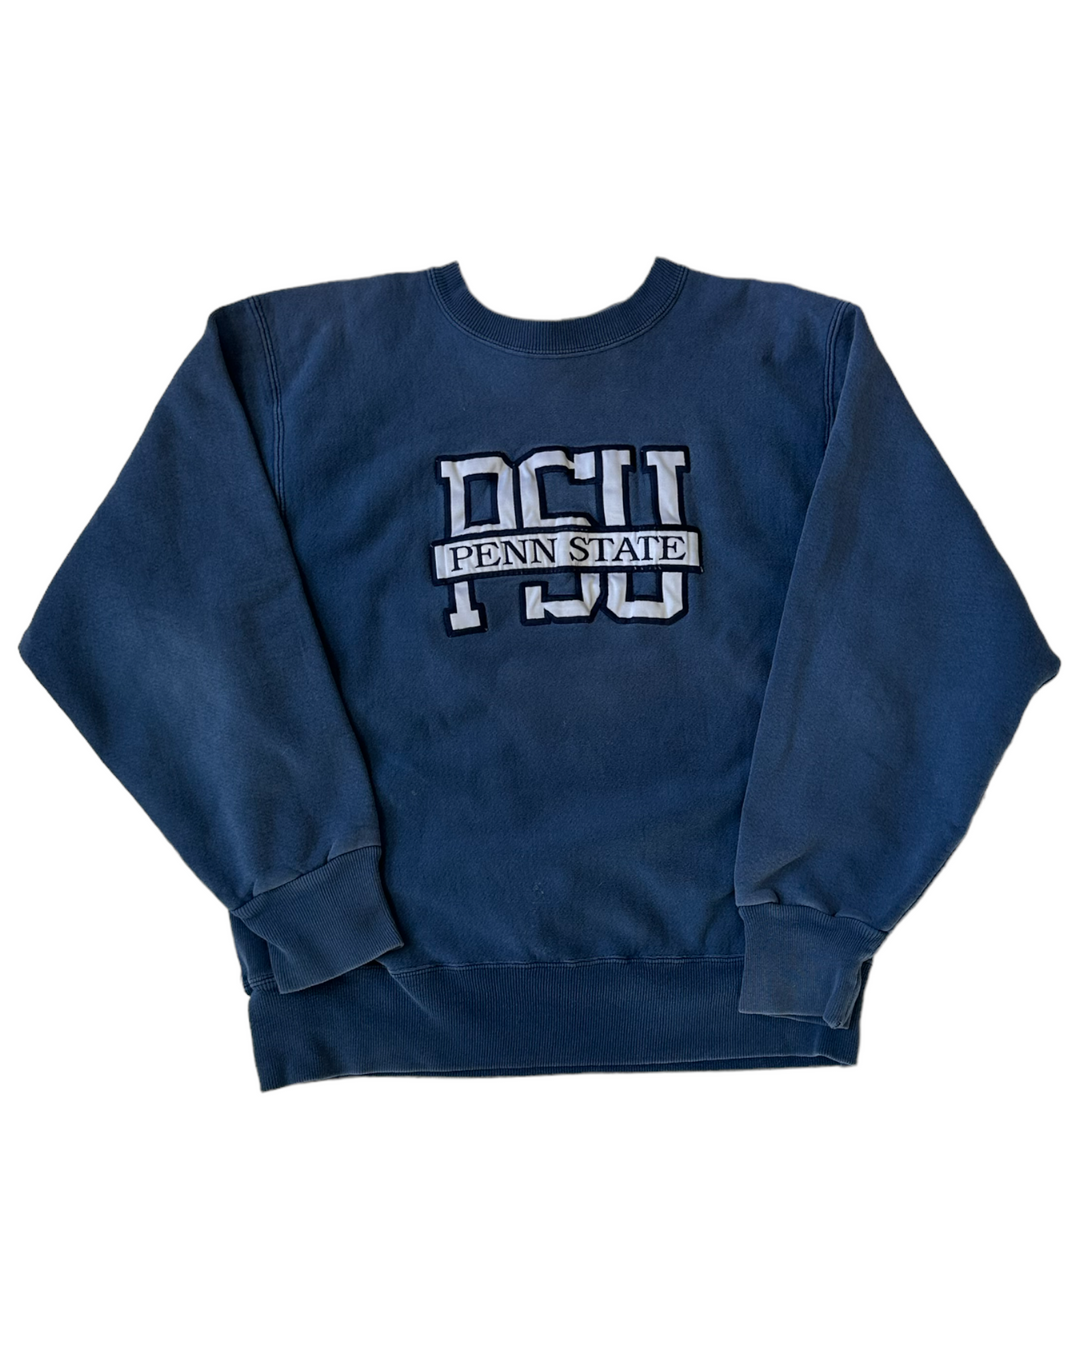 Penn State Rare 90s Vintage Sweatshirt